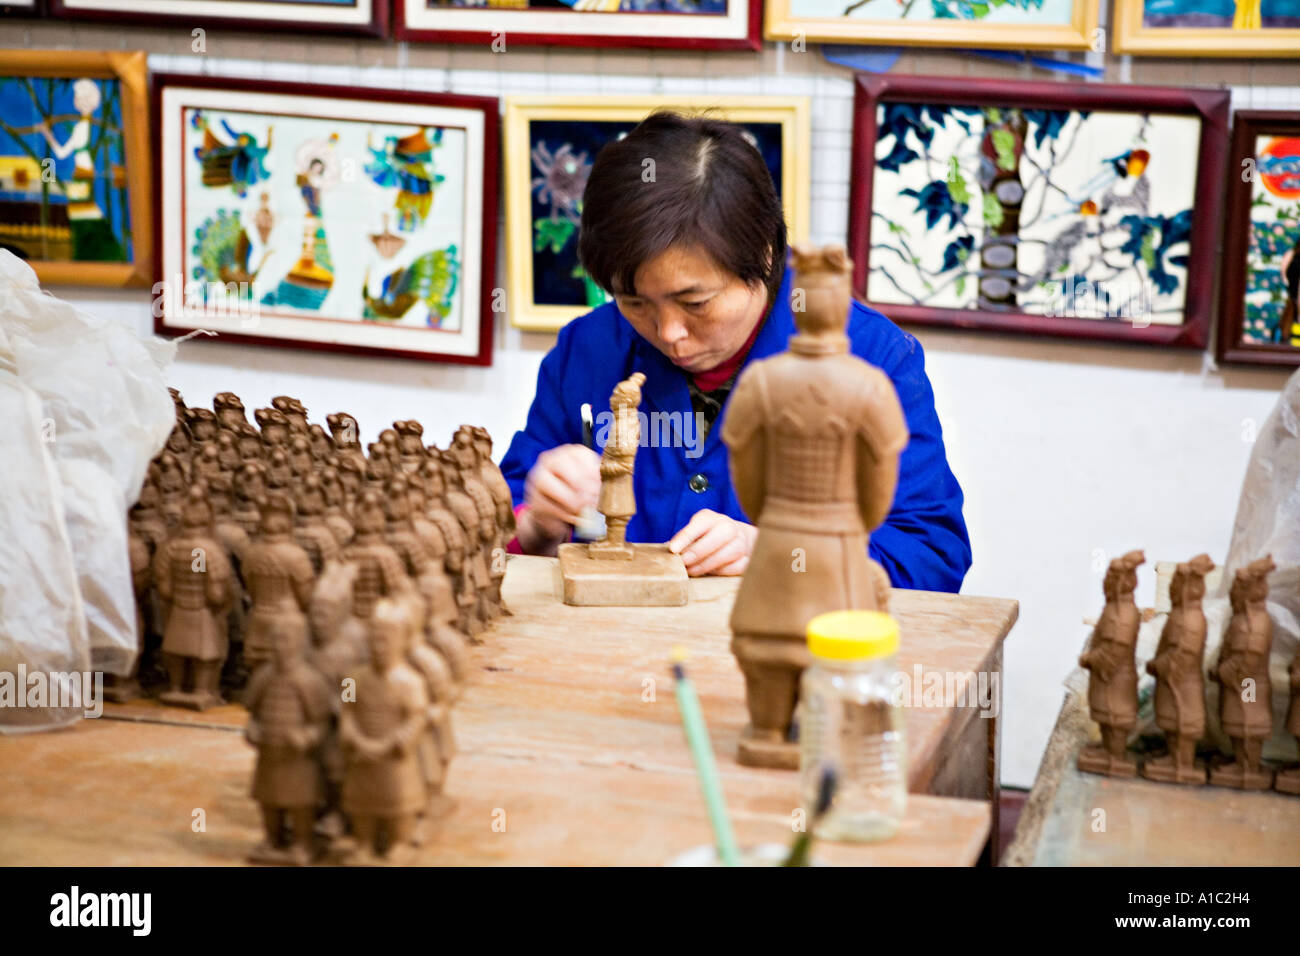 La CHINE XI'AN boutique de souvenirs et d'usine avec des répliques de l'artiste les statues de l'armée de guerriers de terre cuite Banque D'Images